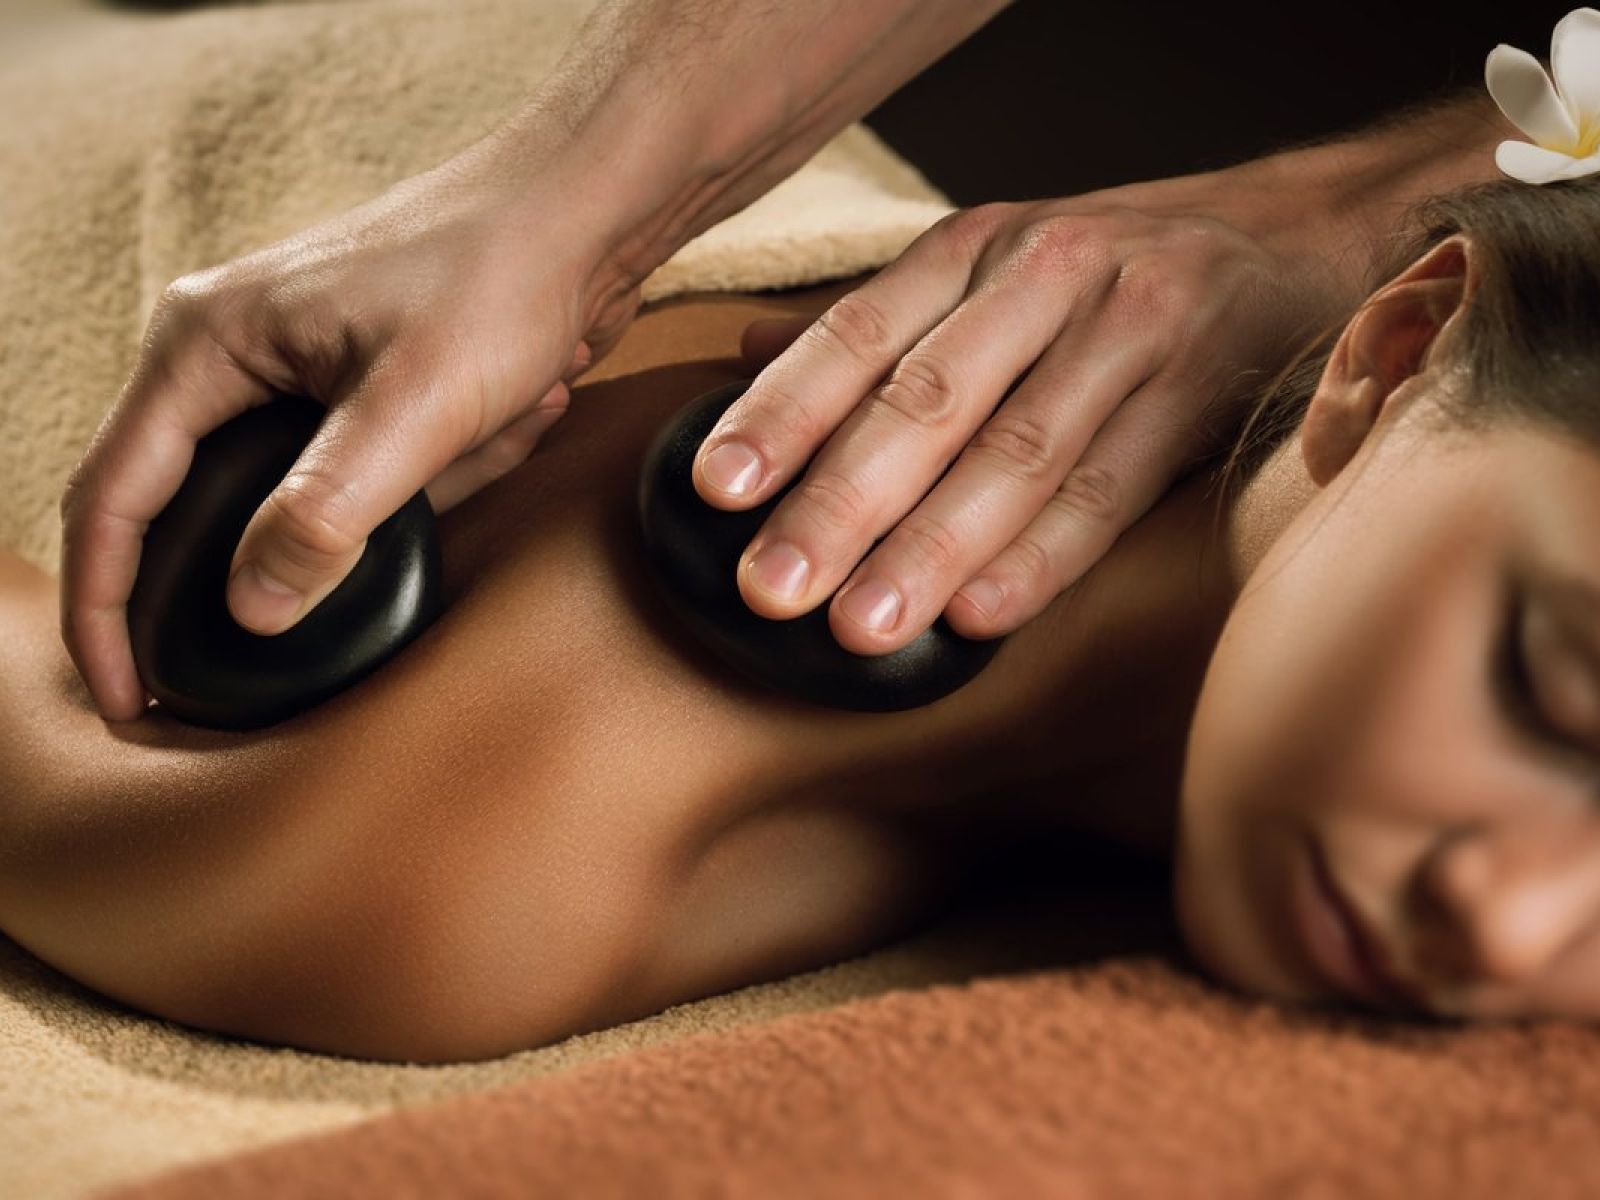 baslate massage stones